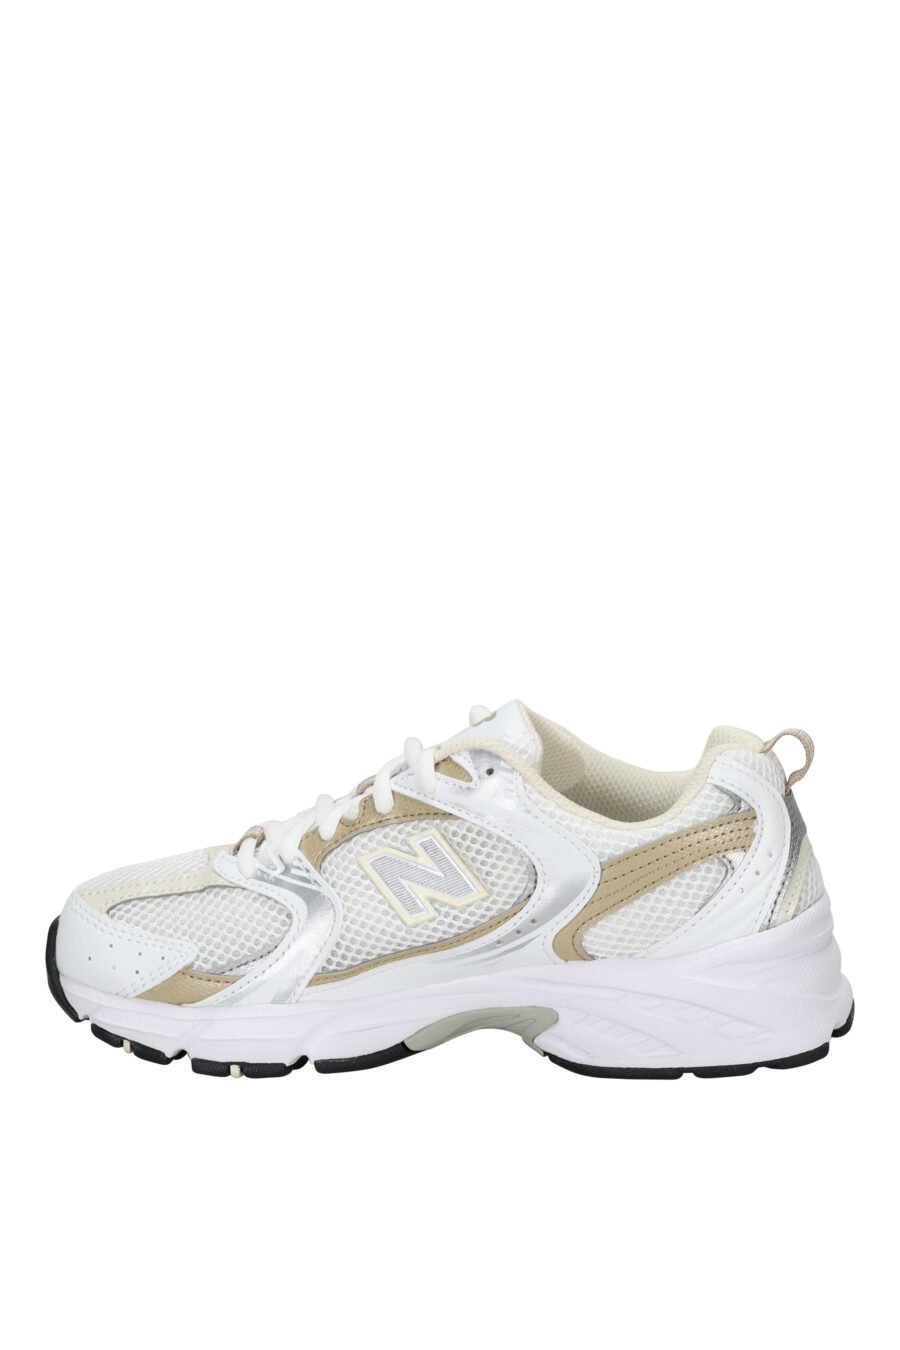 Zapatillas blancas con detalles dorados "530" y logo "N" blanco - 197375712635 2